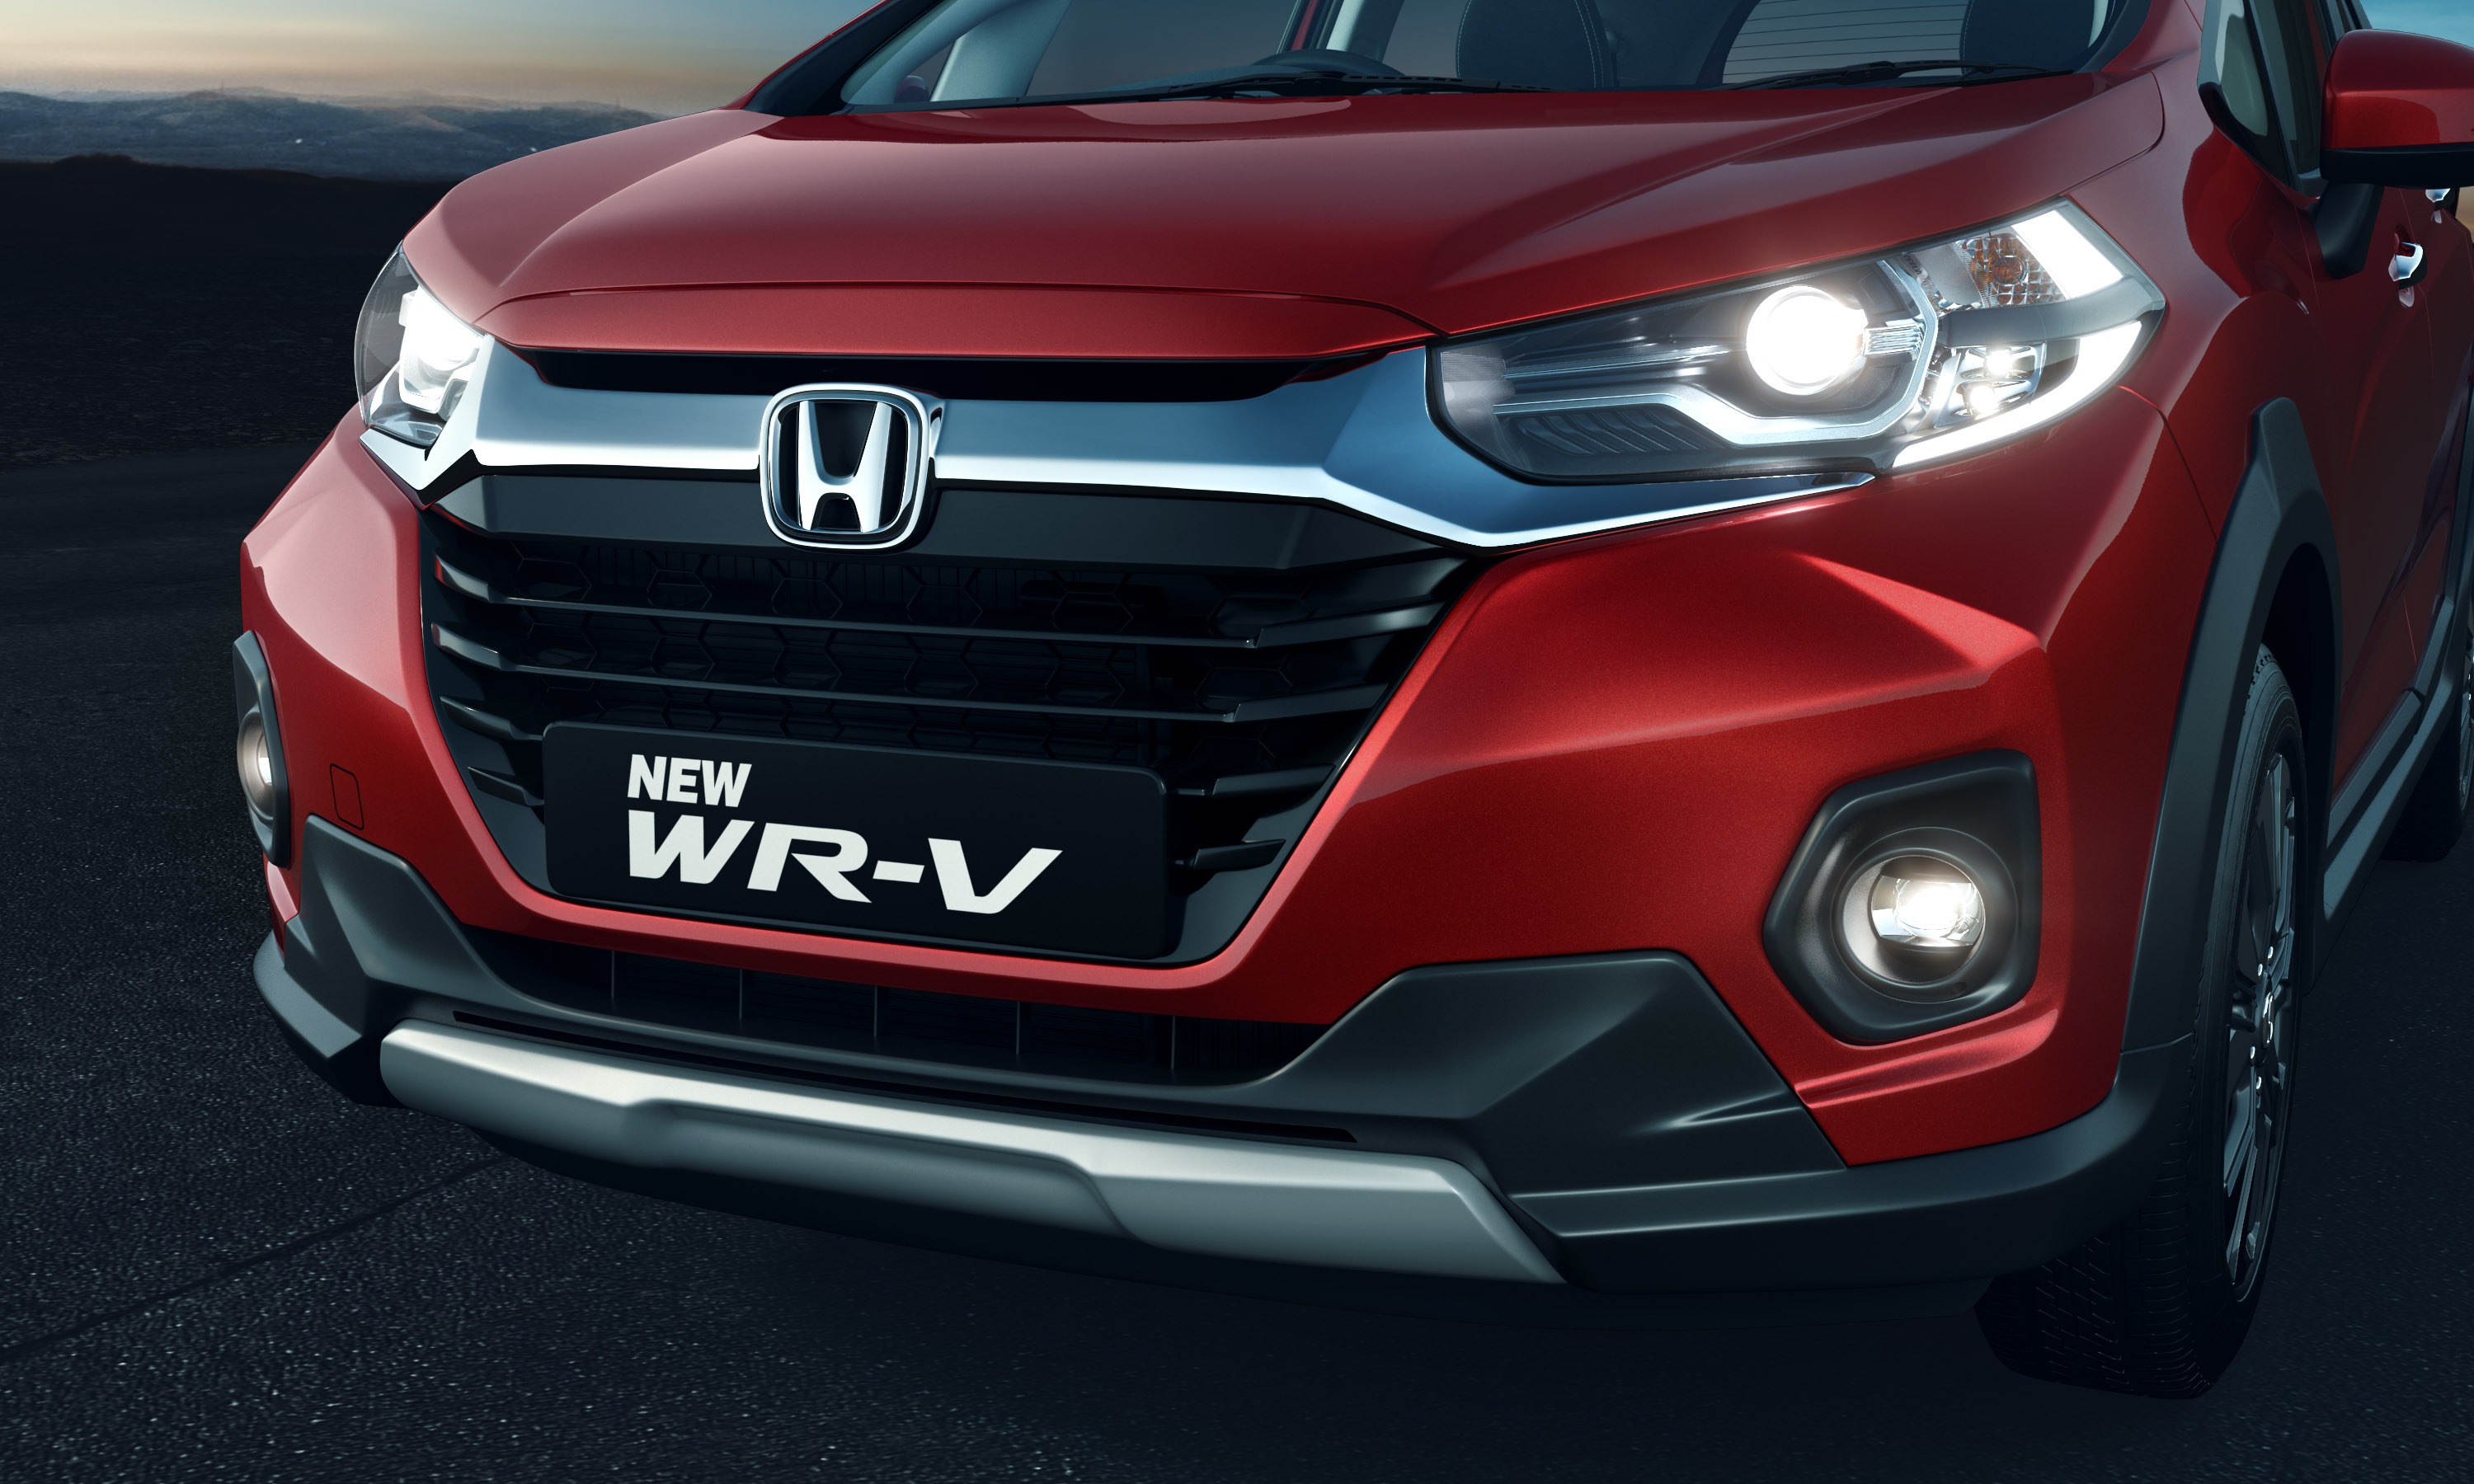 Honda Wr V Price Specs Reviews Image And Videos